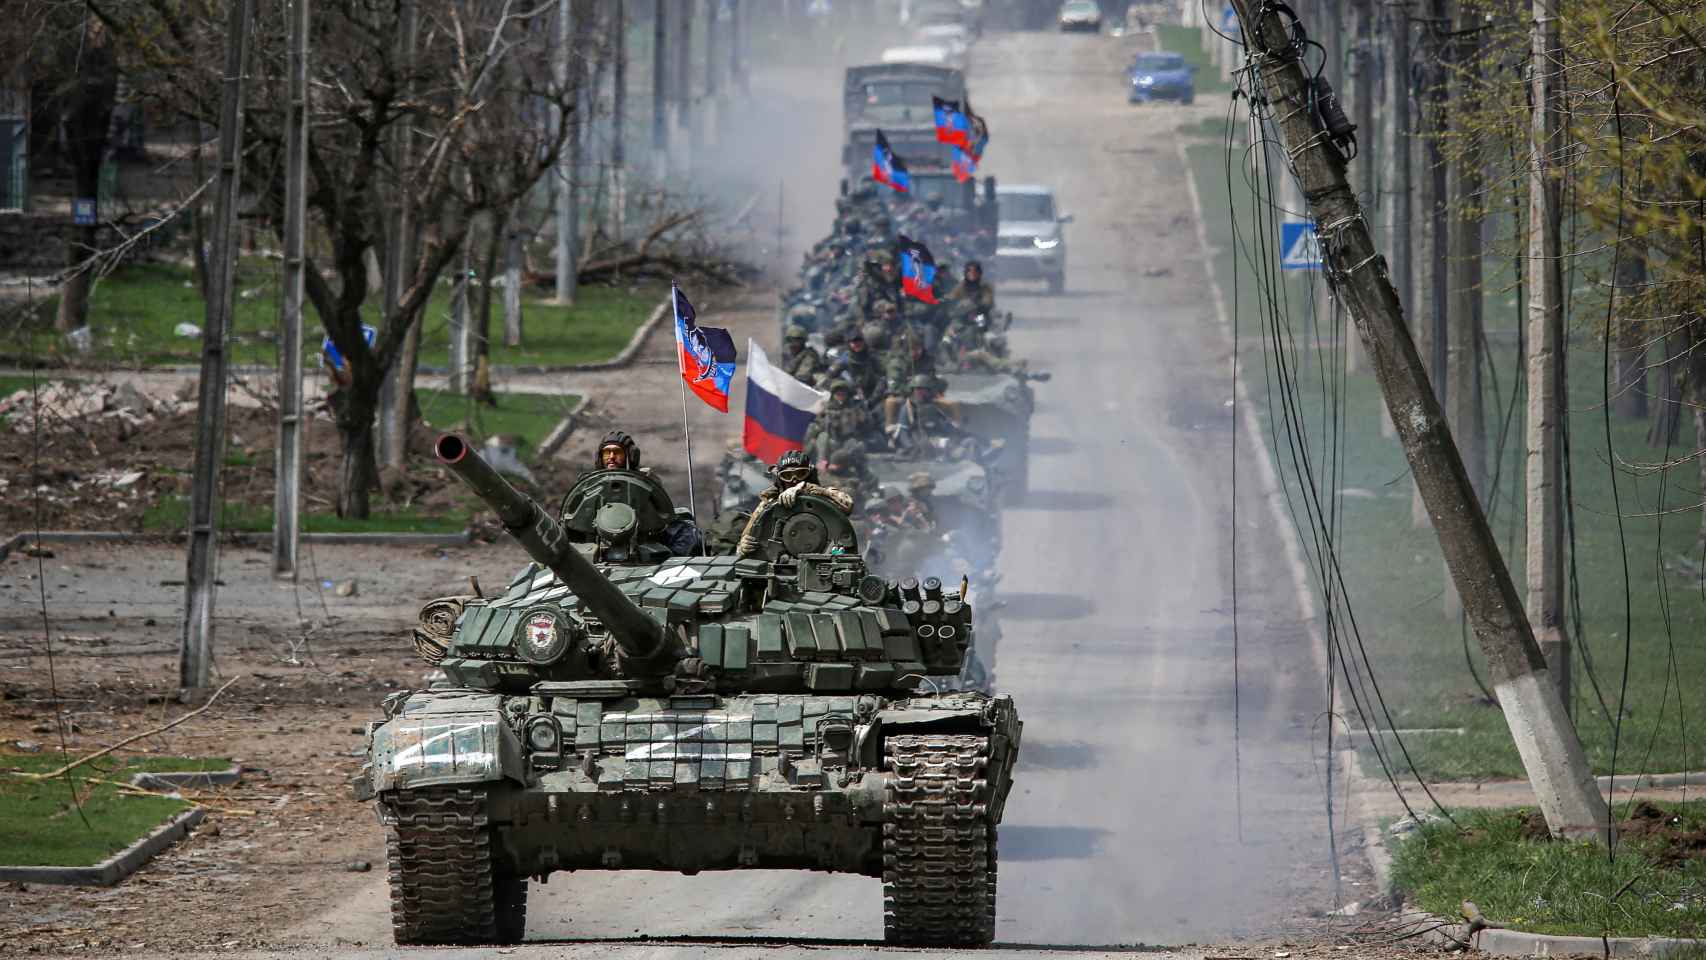 : Un convoy blindado de tropas pro-rusas se mueve a lo largo de una carretera durante el conflicto.